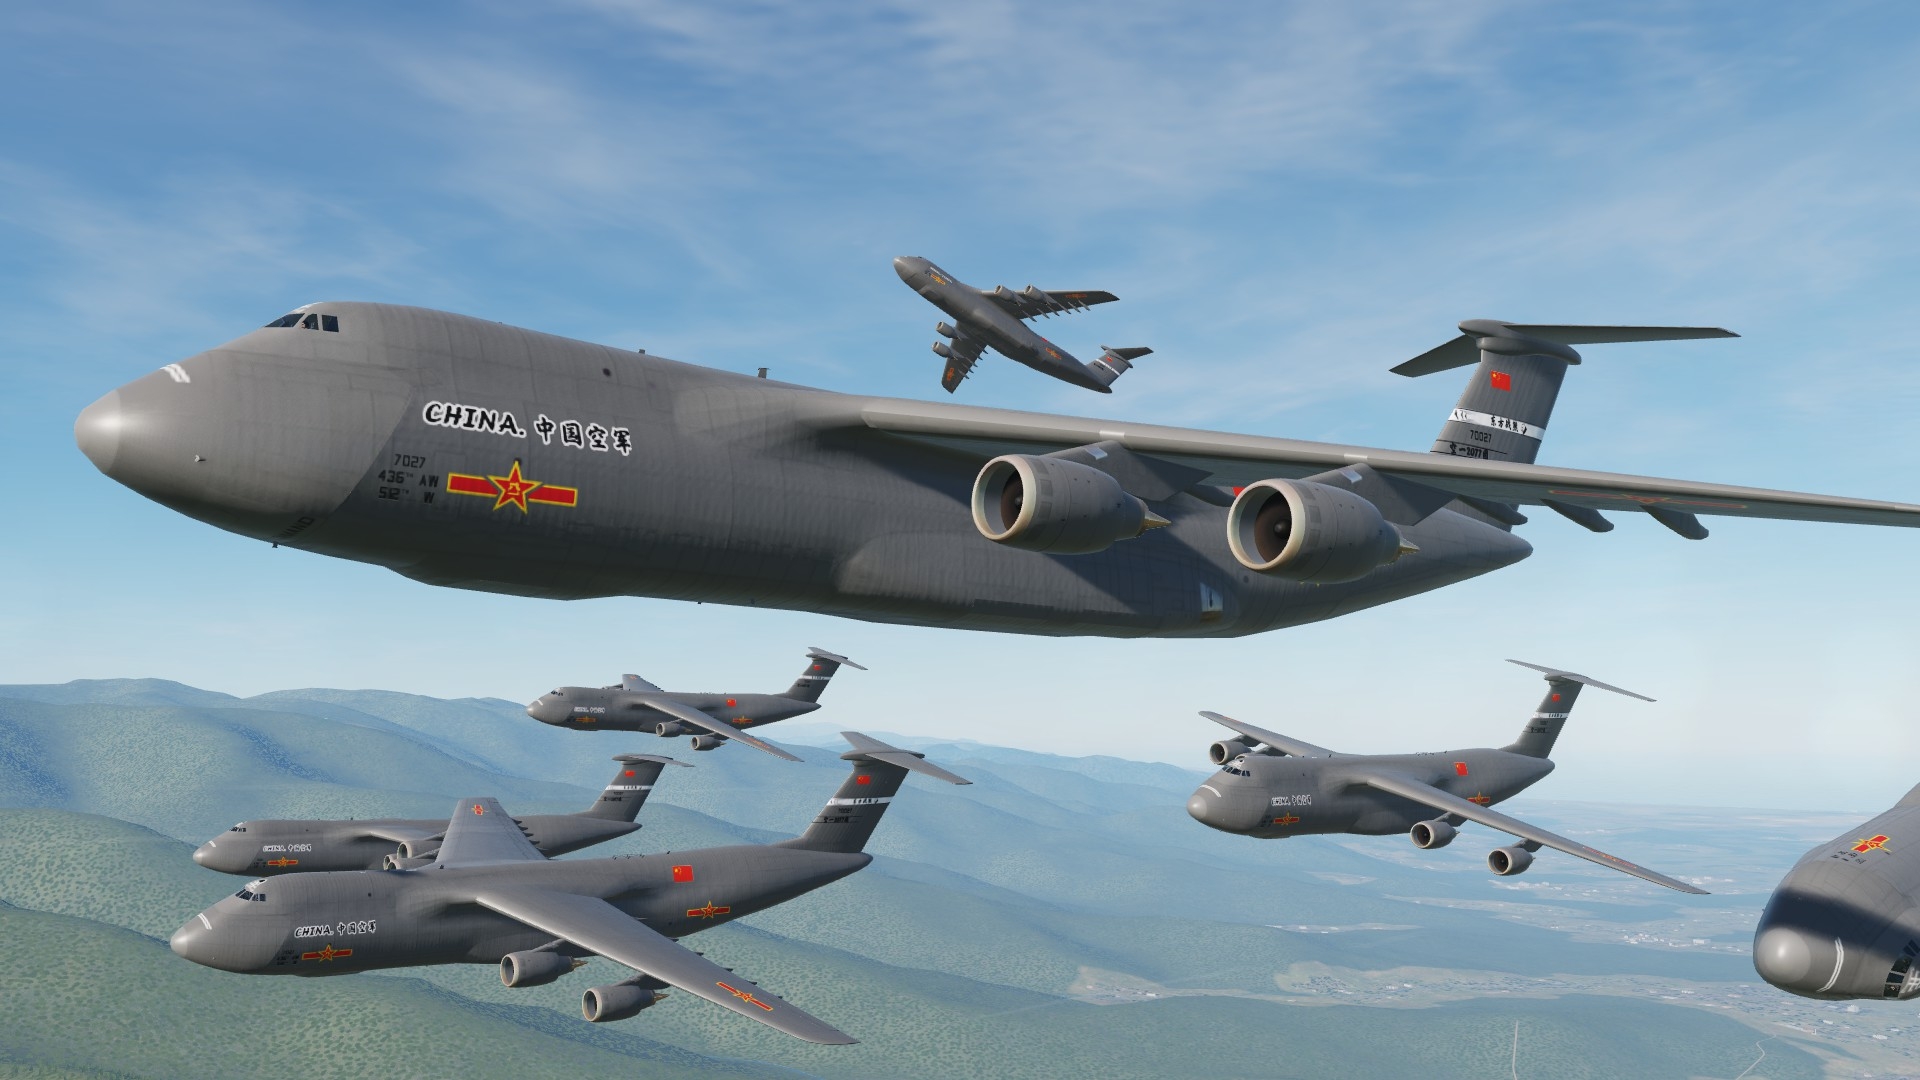 国产运30大型运输机,遭苏30mki战机高原拦截,会怎样?游戏模拟